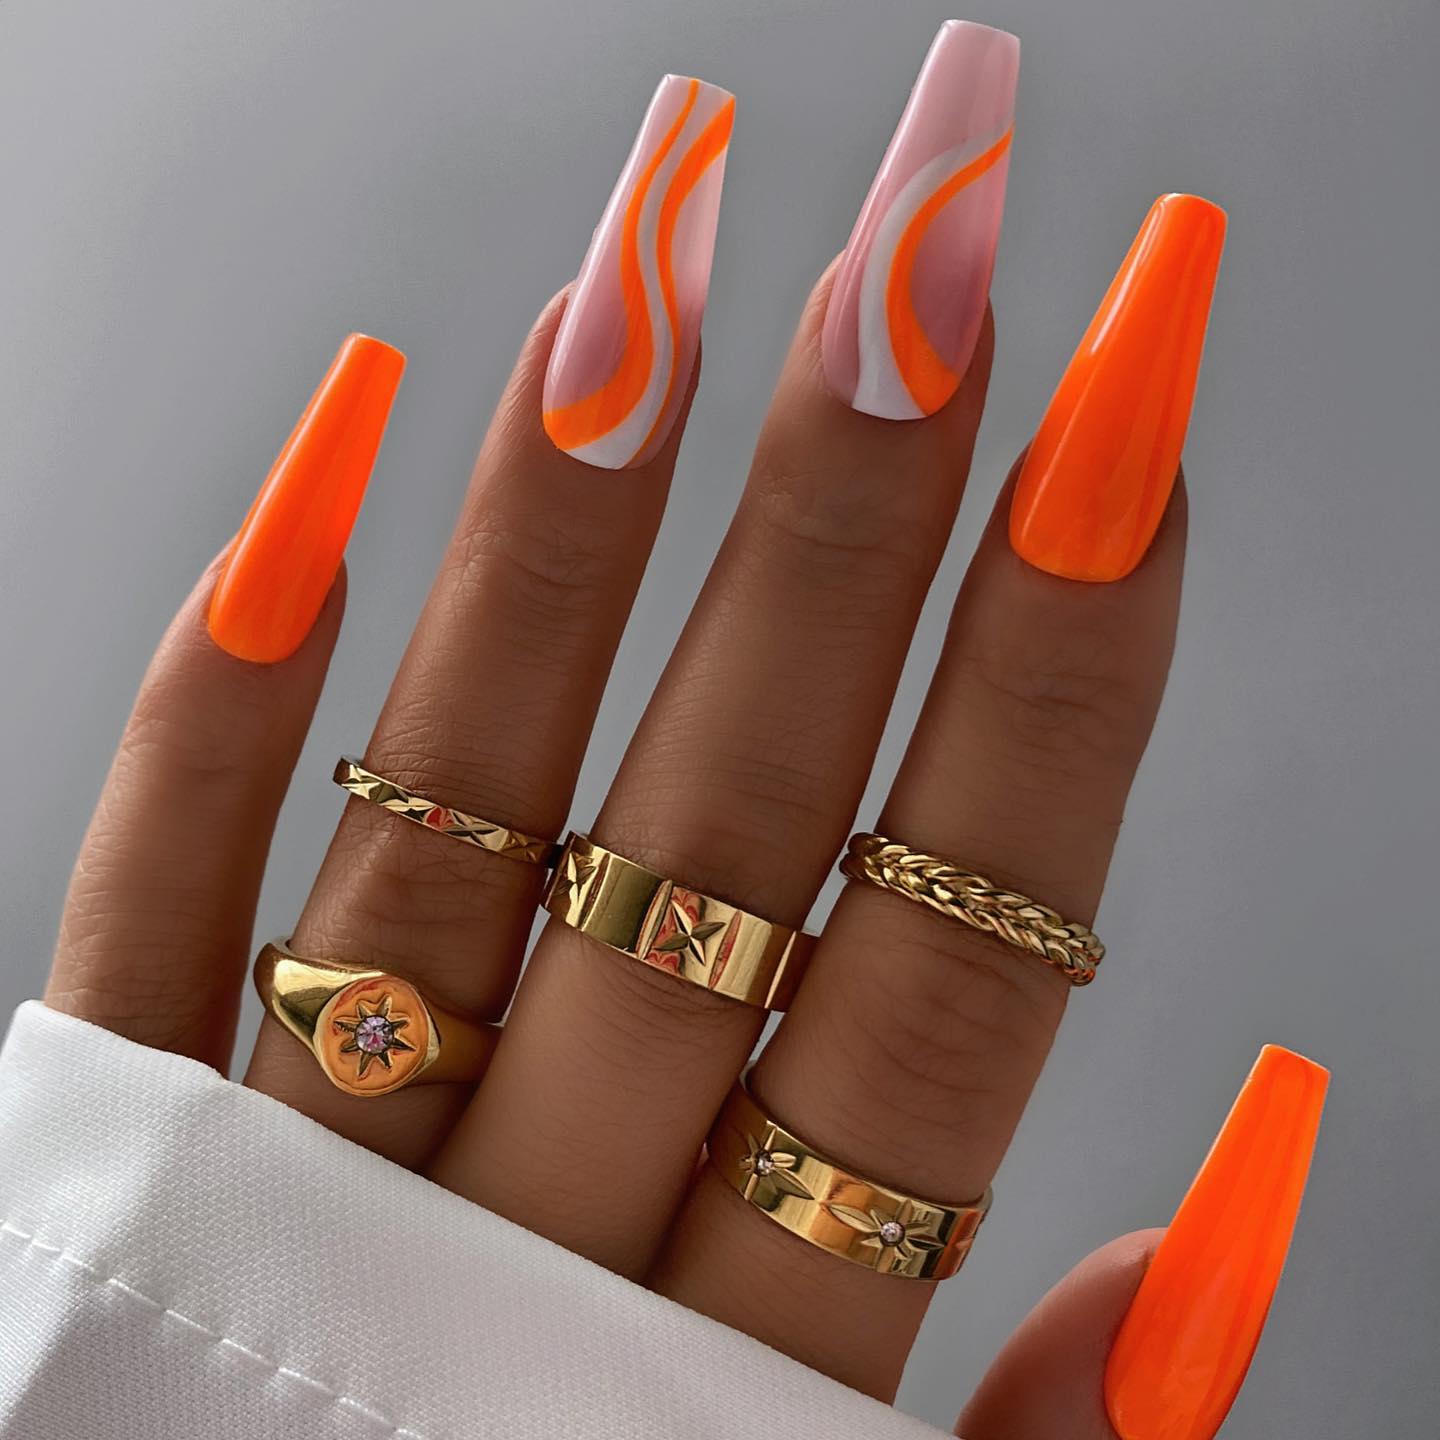 Lange acryl oranje nagels